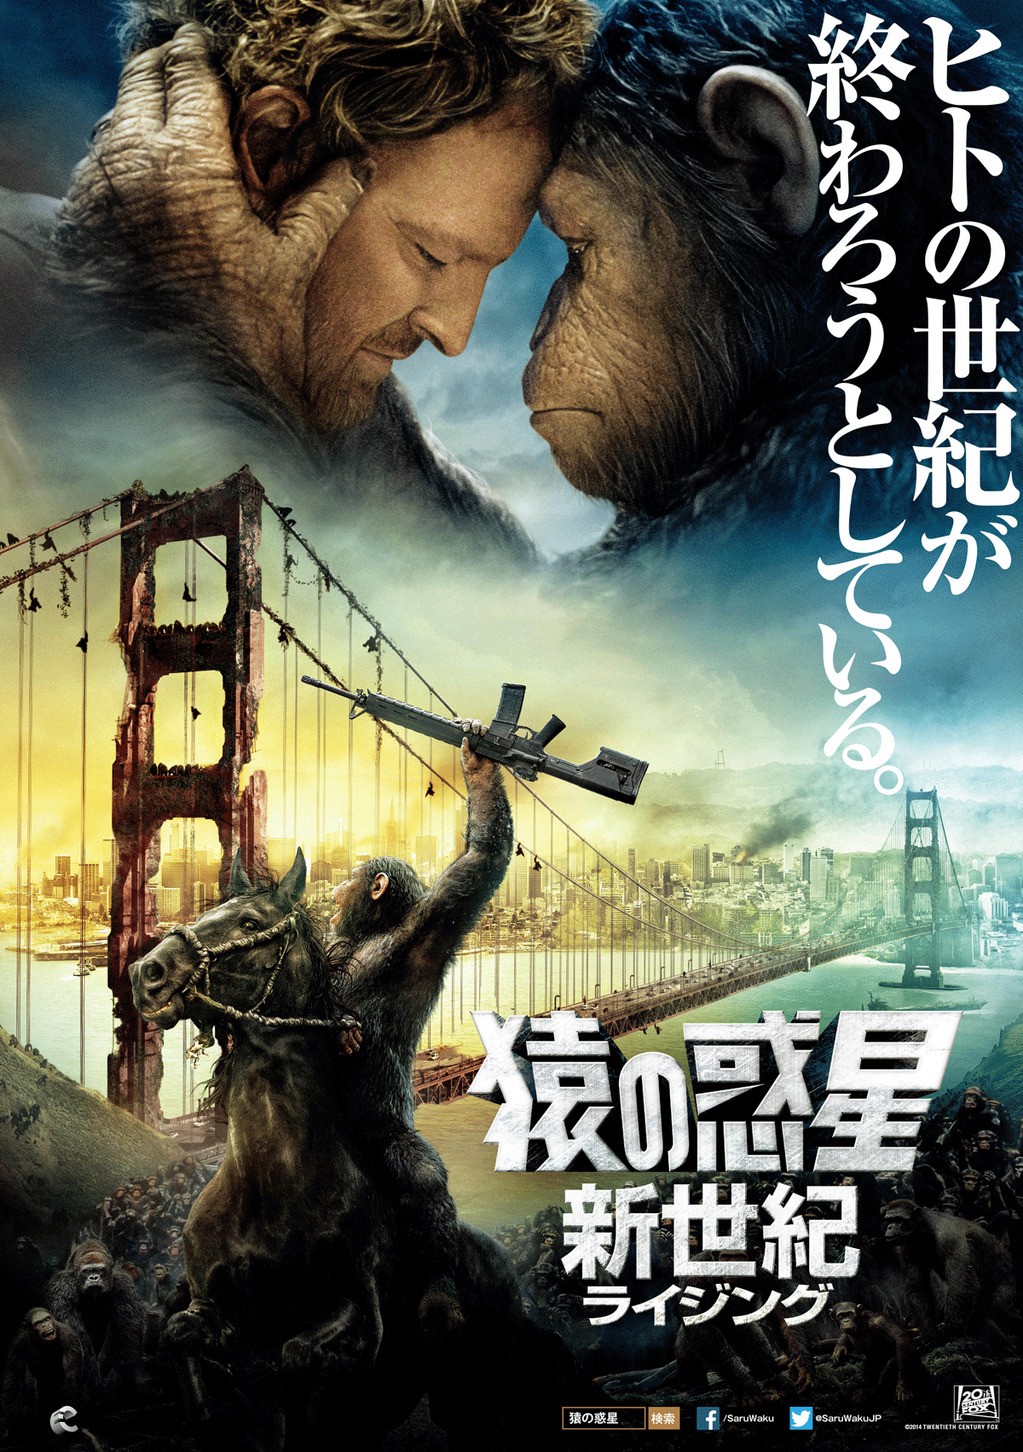 Постер - Планета обезьян: Революция: 1023x1452 / 529 Кб